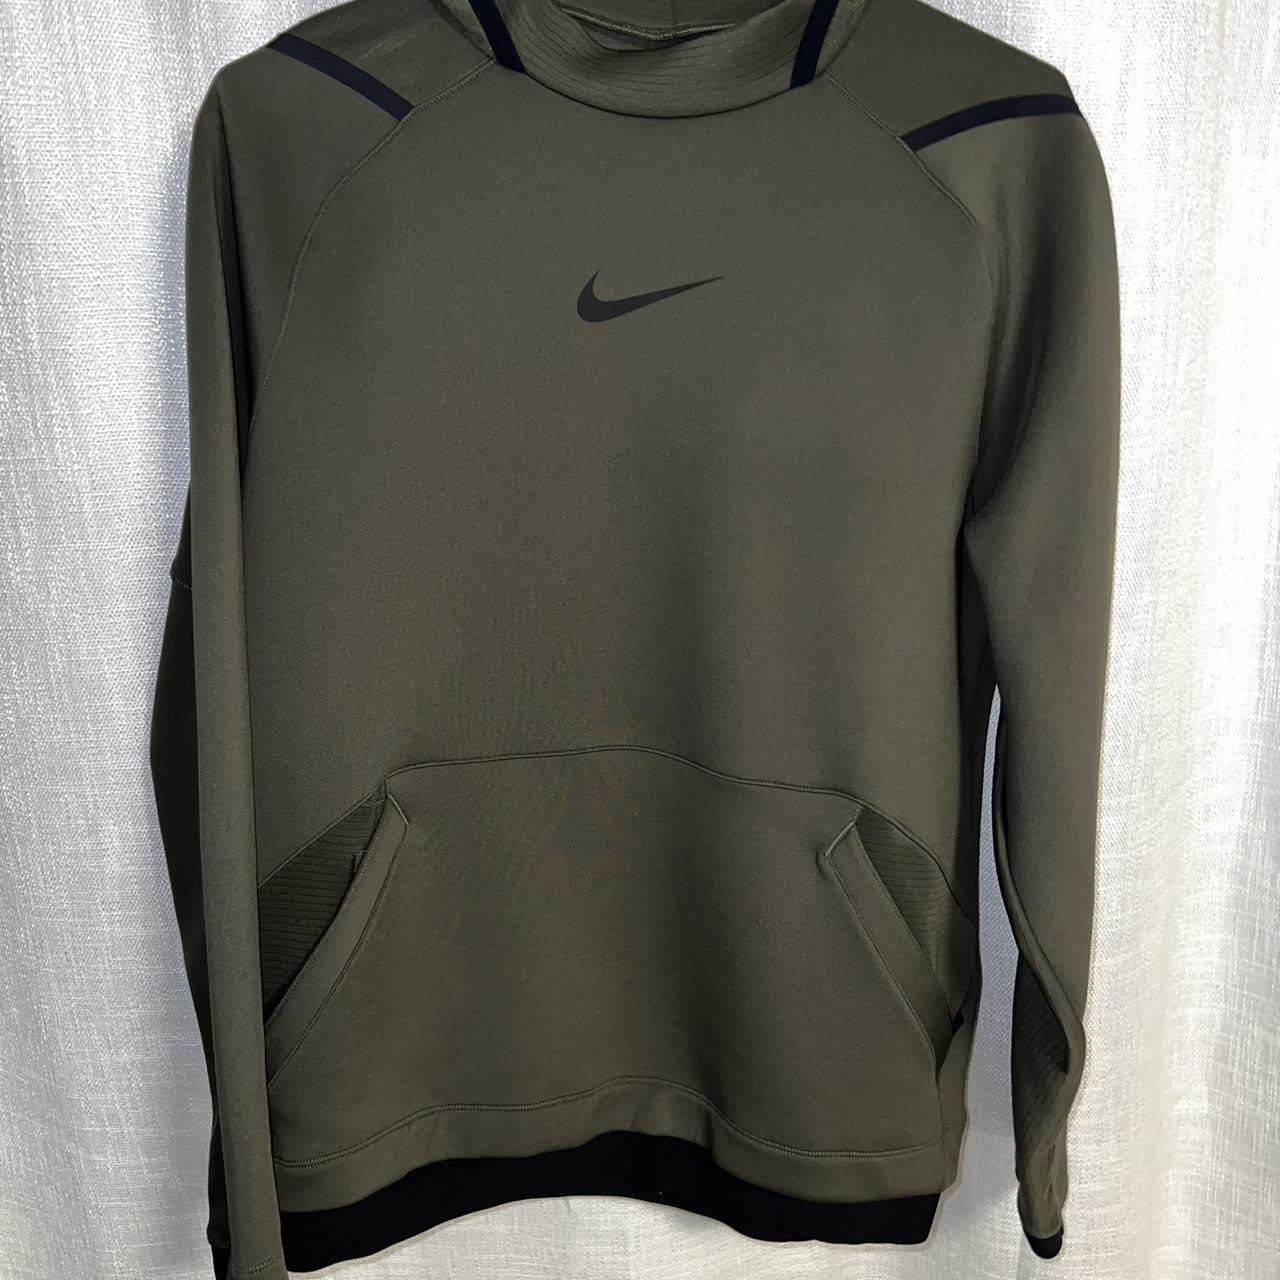 Nike pro hoodie - Depop